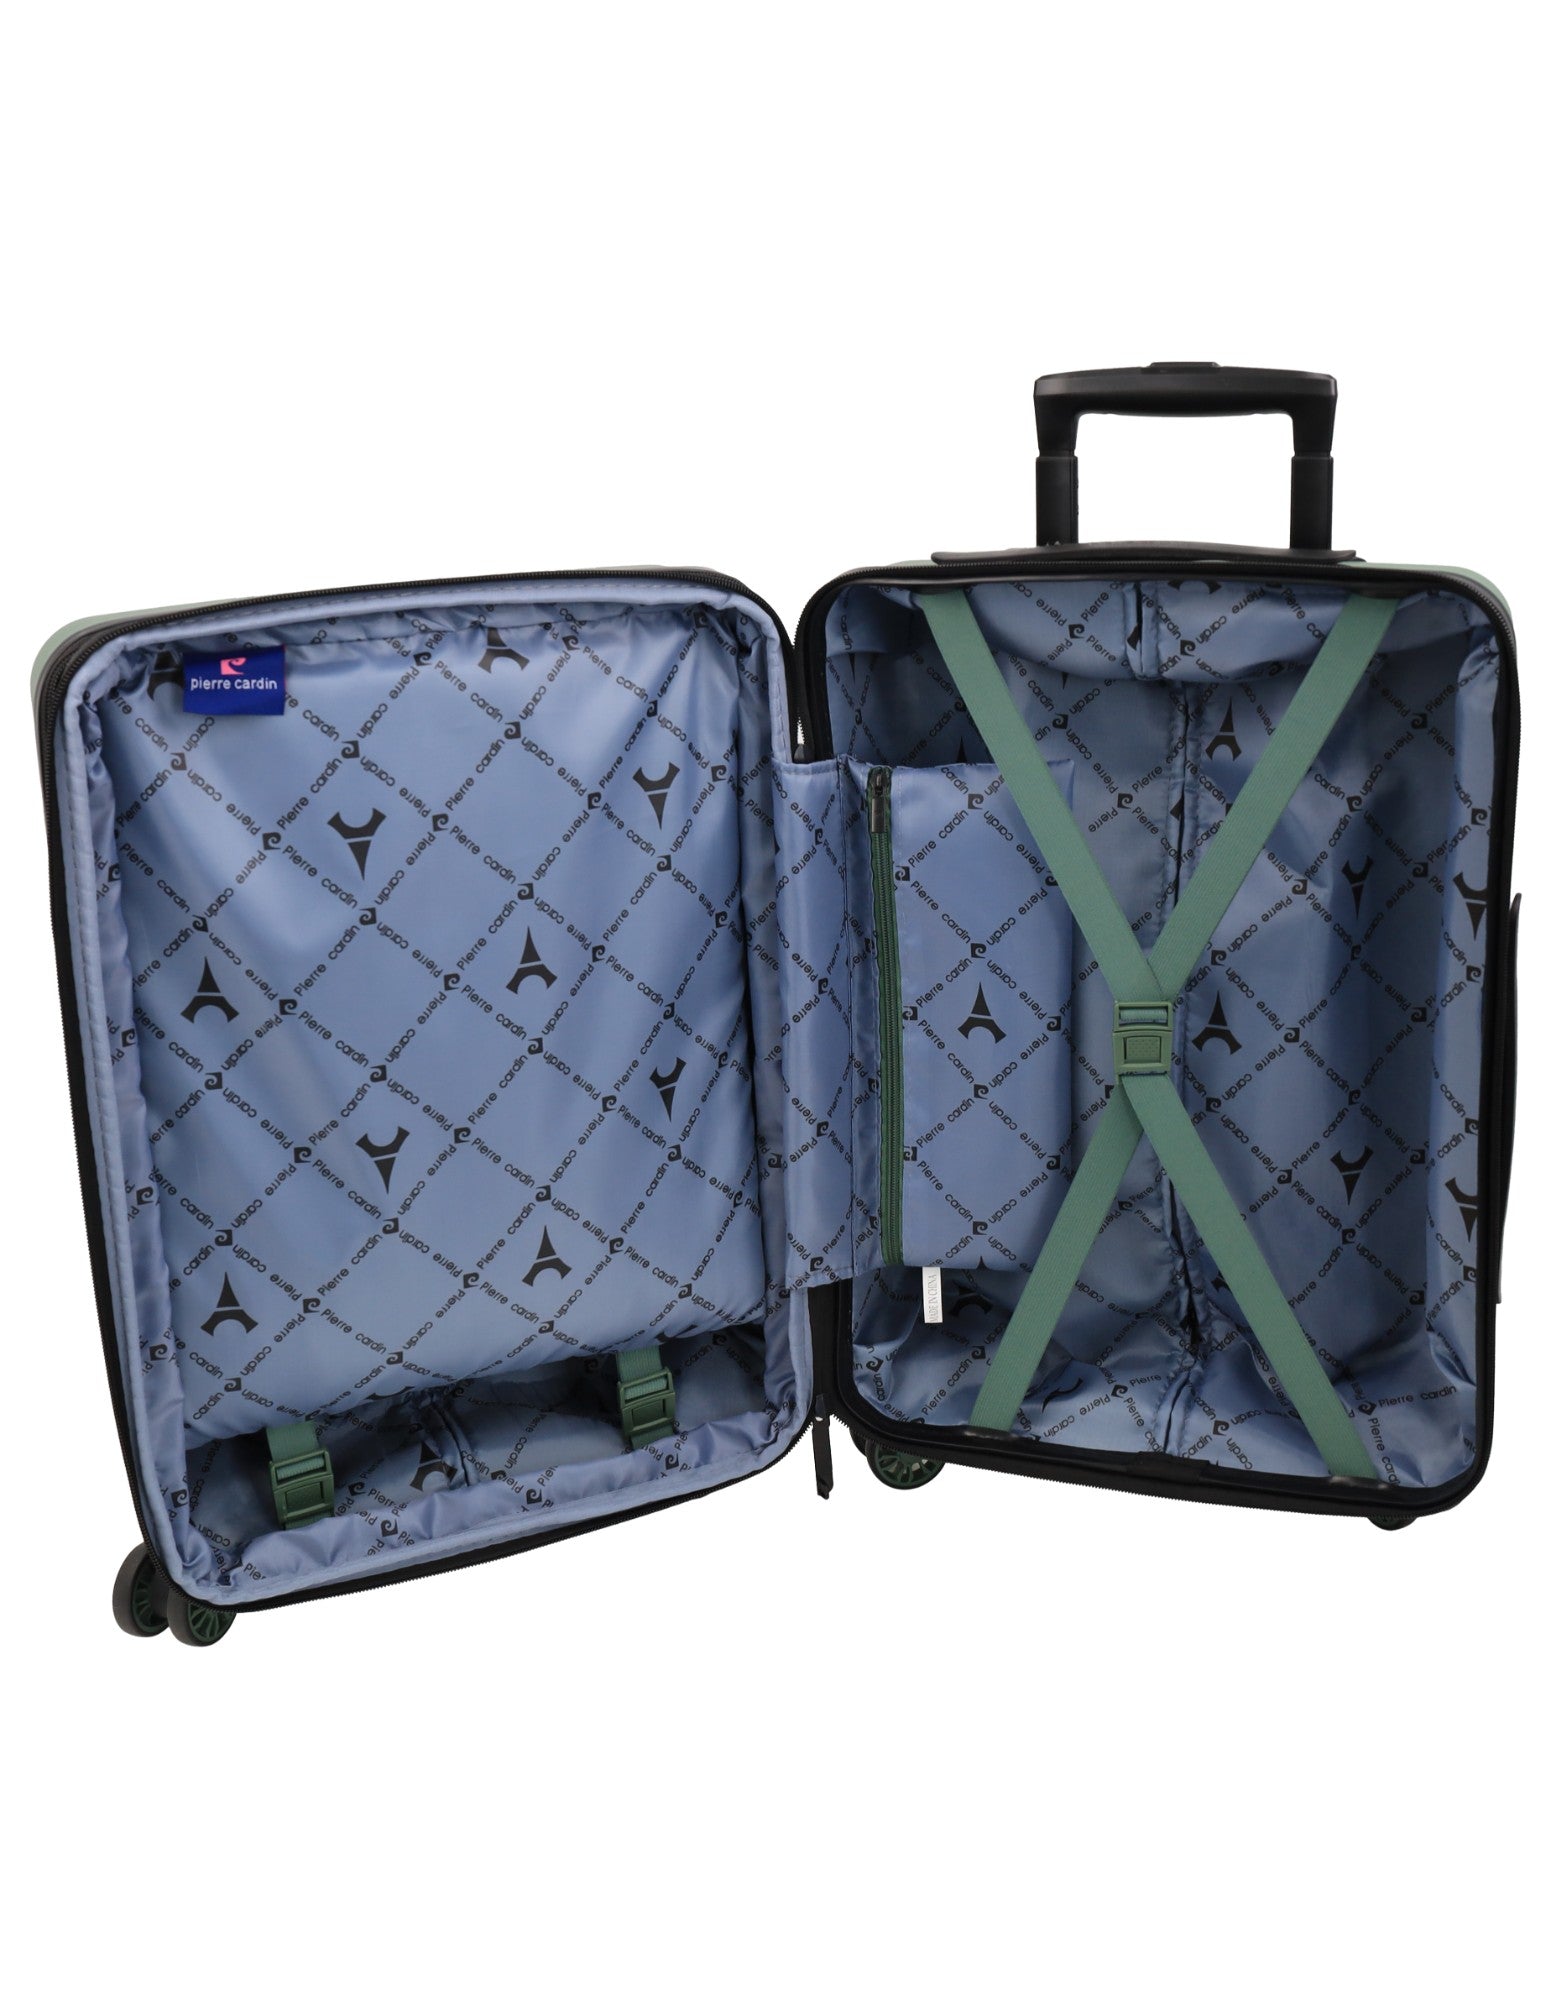 Pierre Cardin 54cm CABIN Hard Shell Suitcase in Moss